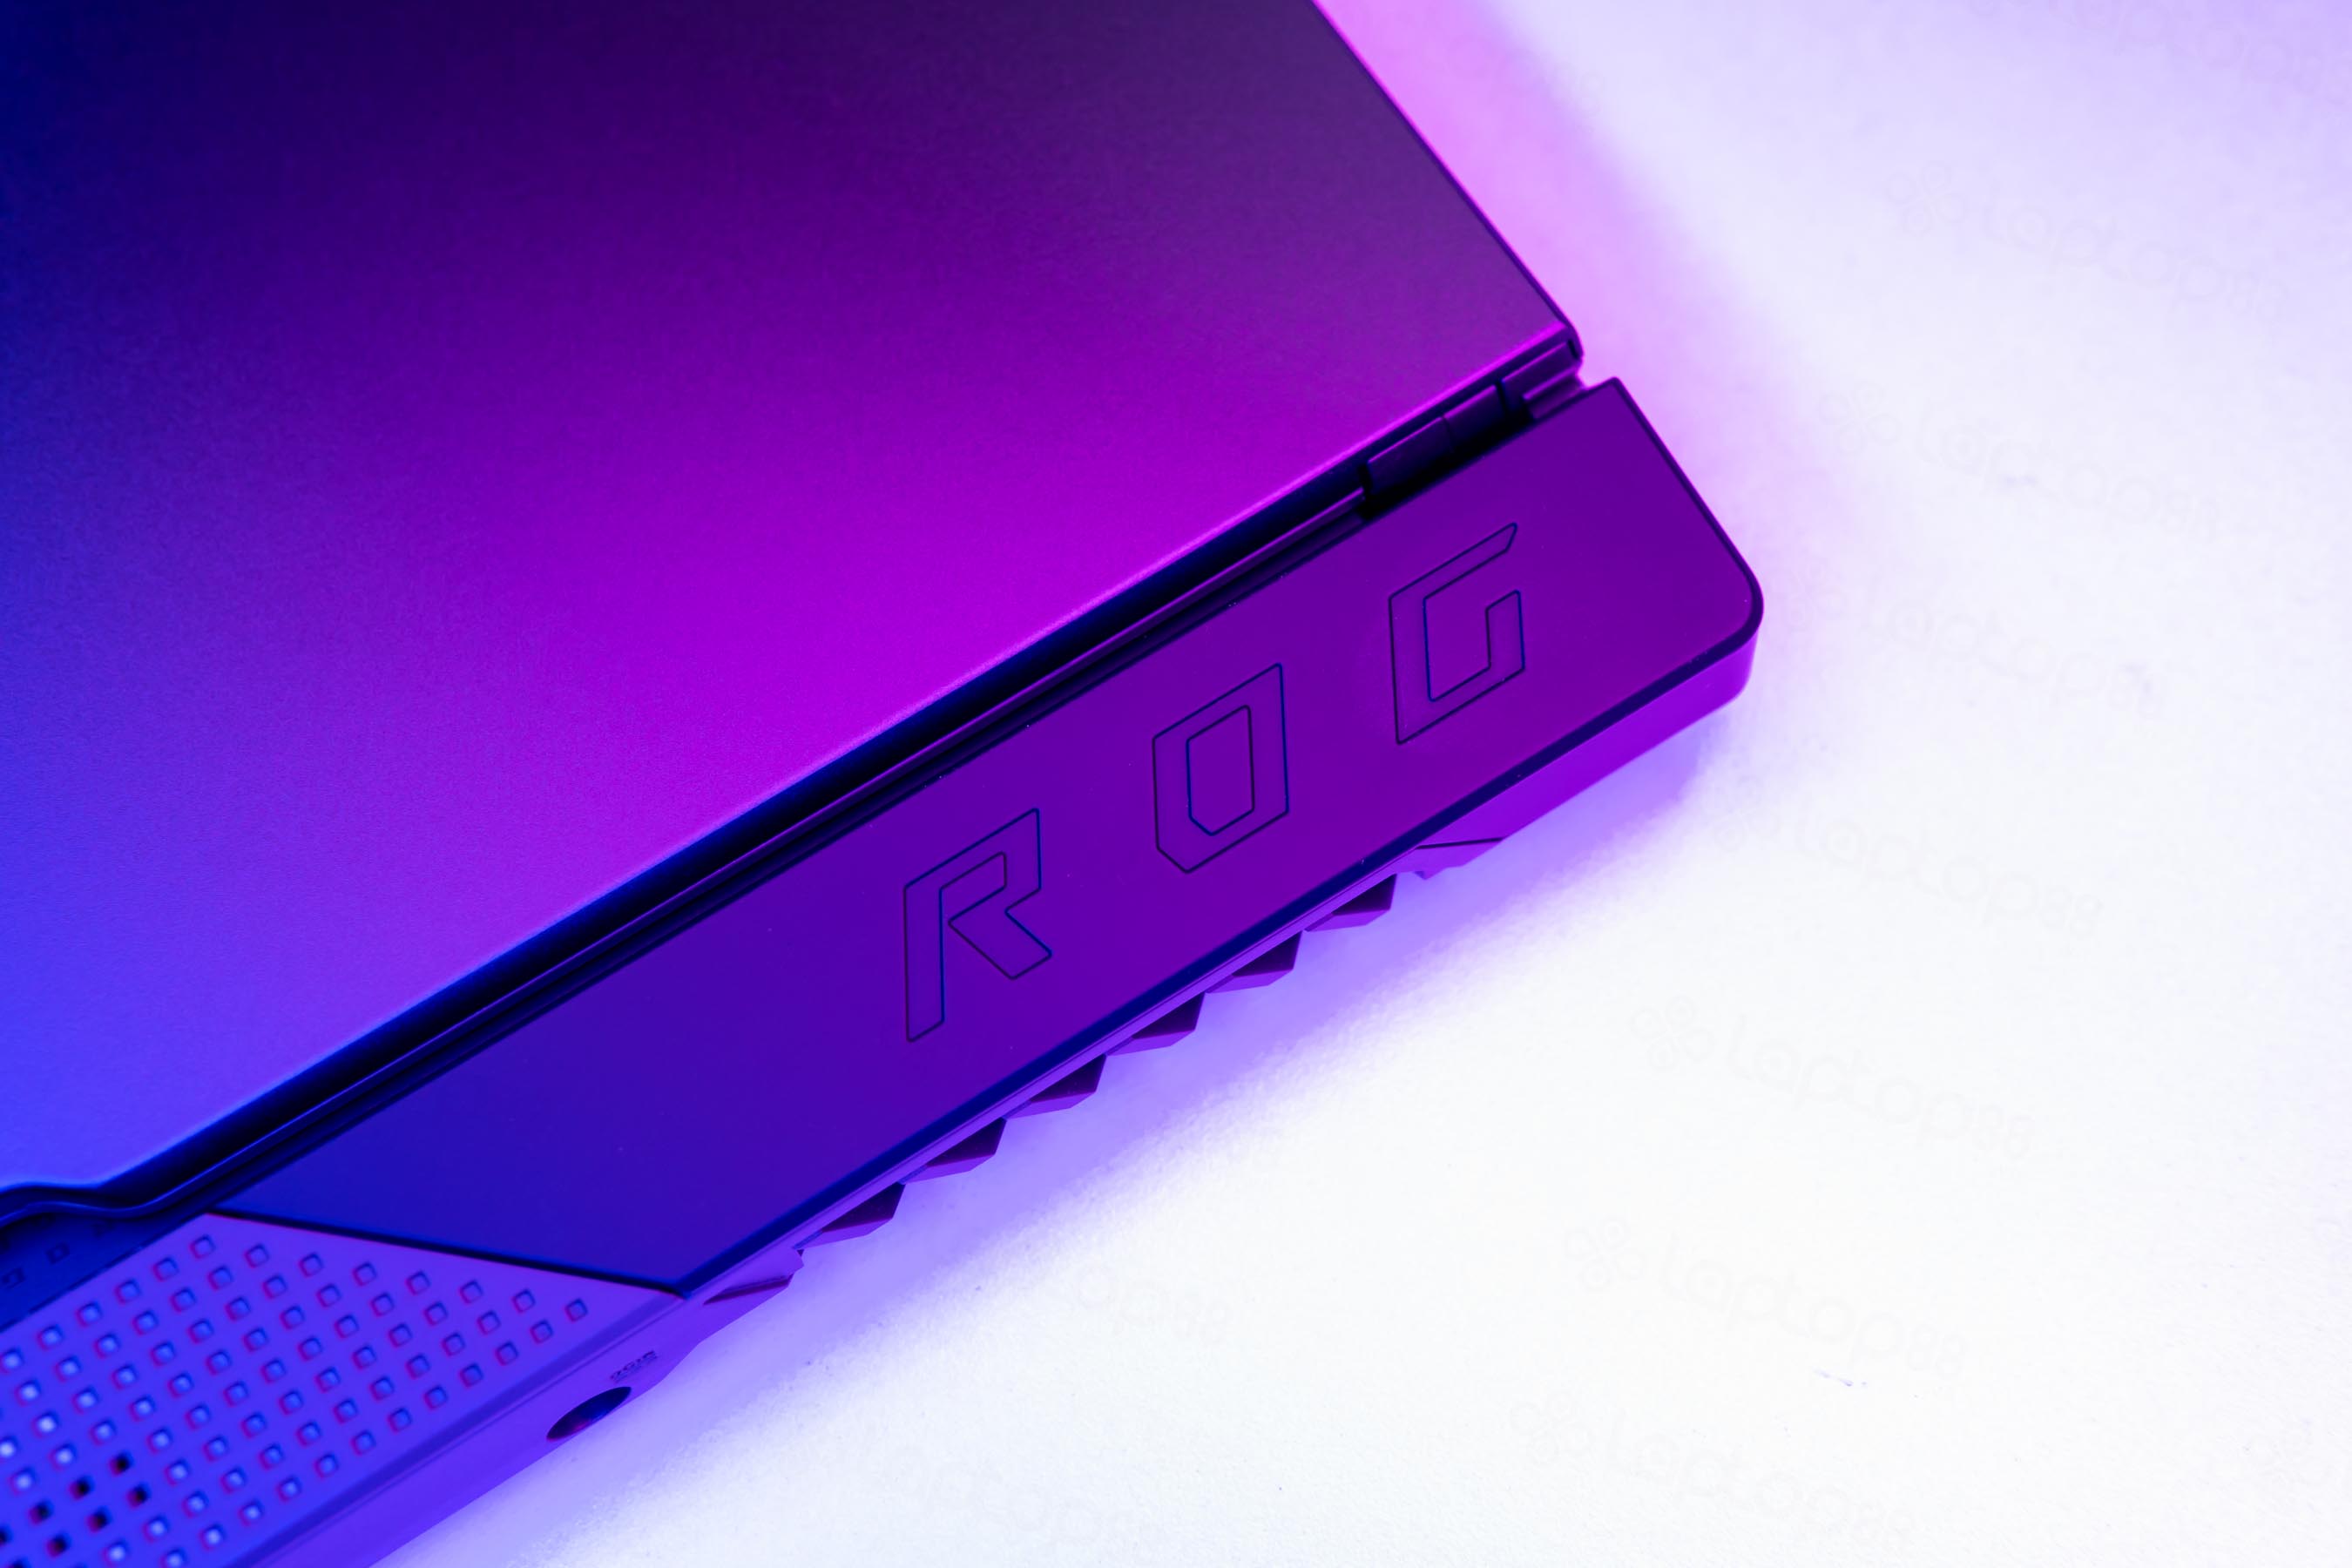 Là game thủ không thể bỏ qua Asus ROG laptop 2022 cực khoẻ này!